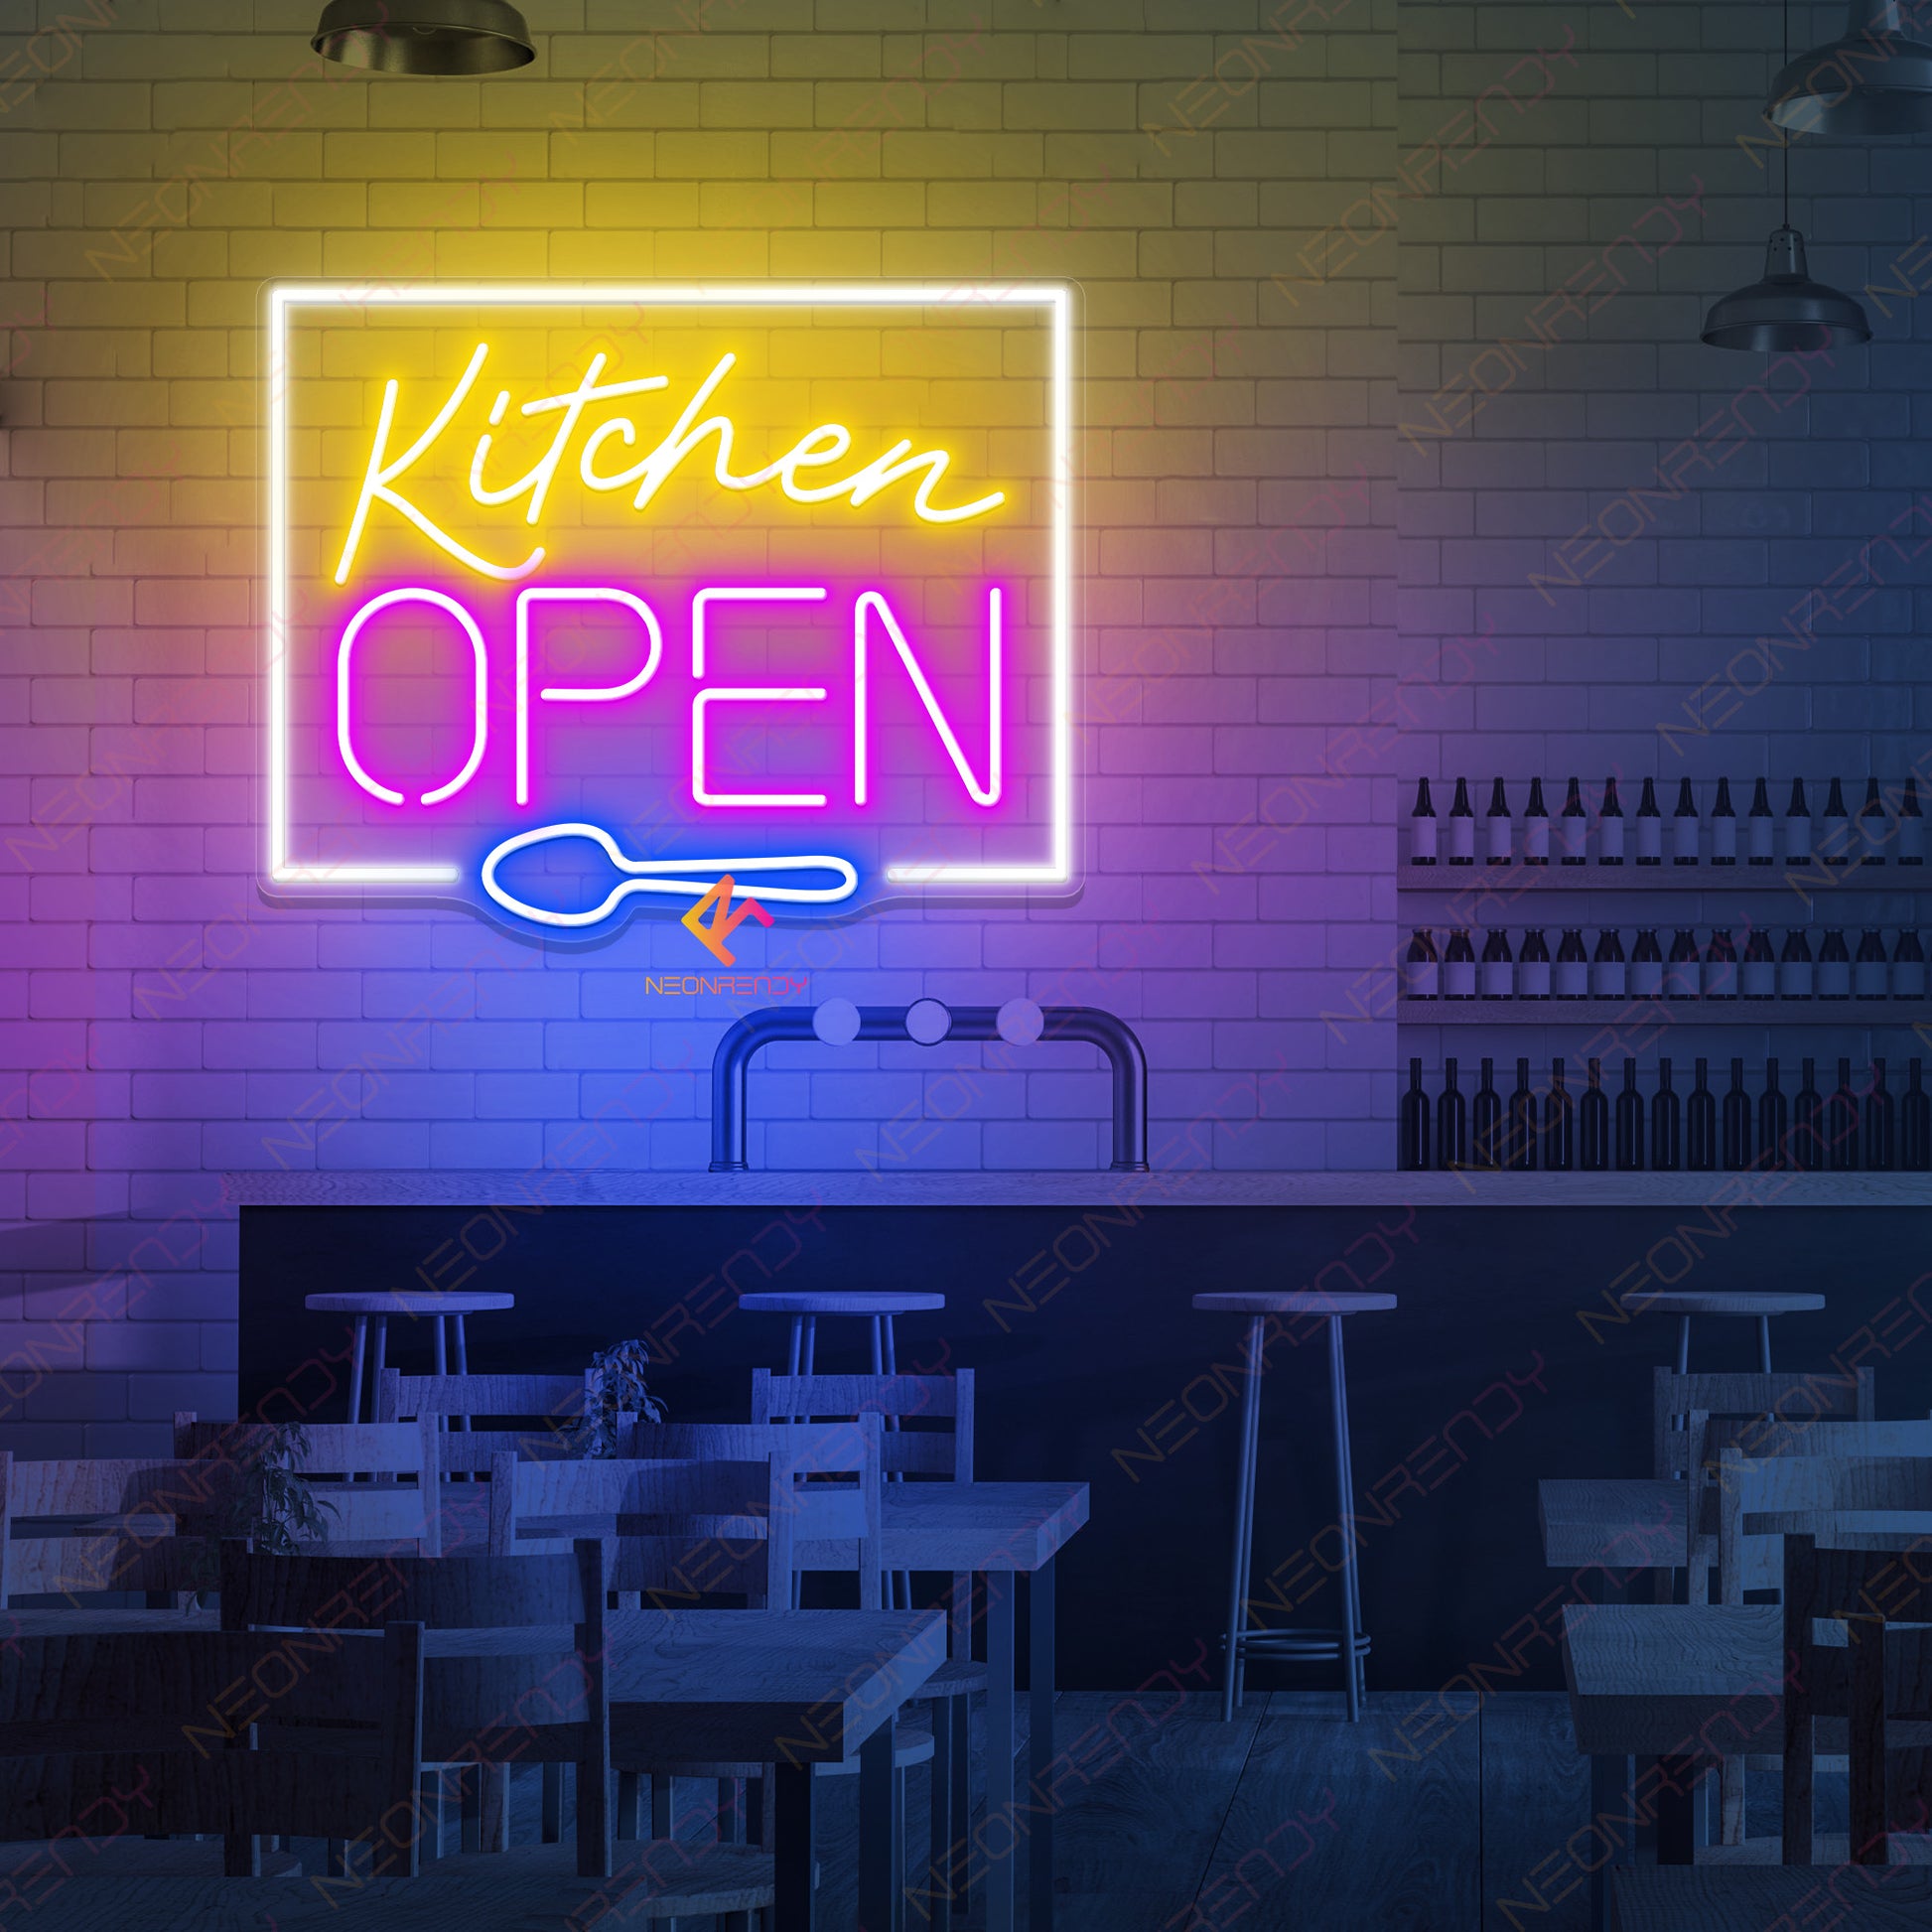 Kitchen Open Neon Sign Led Light purple